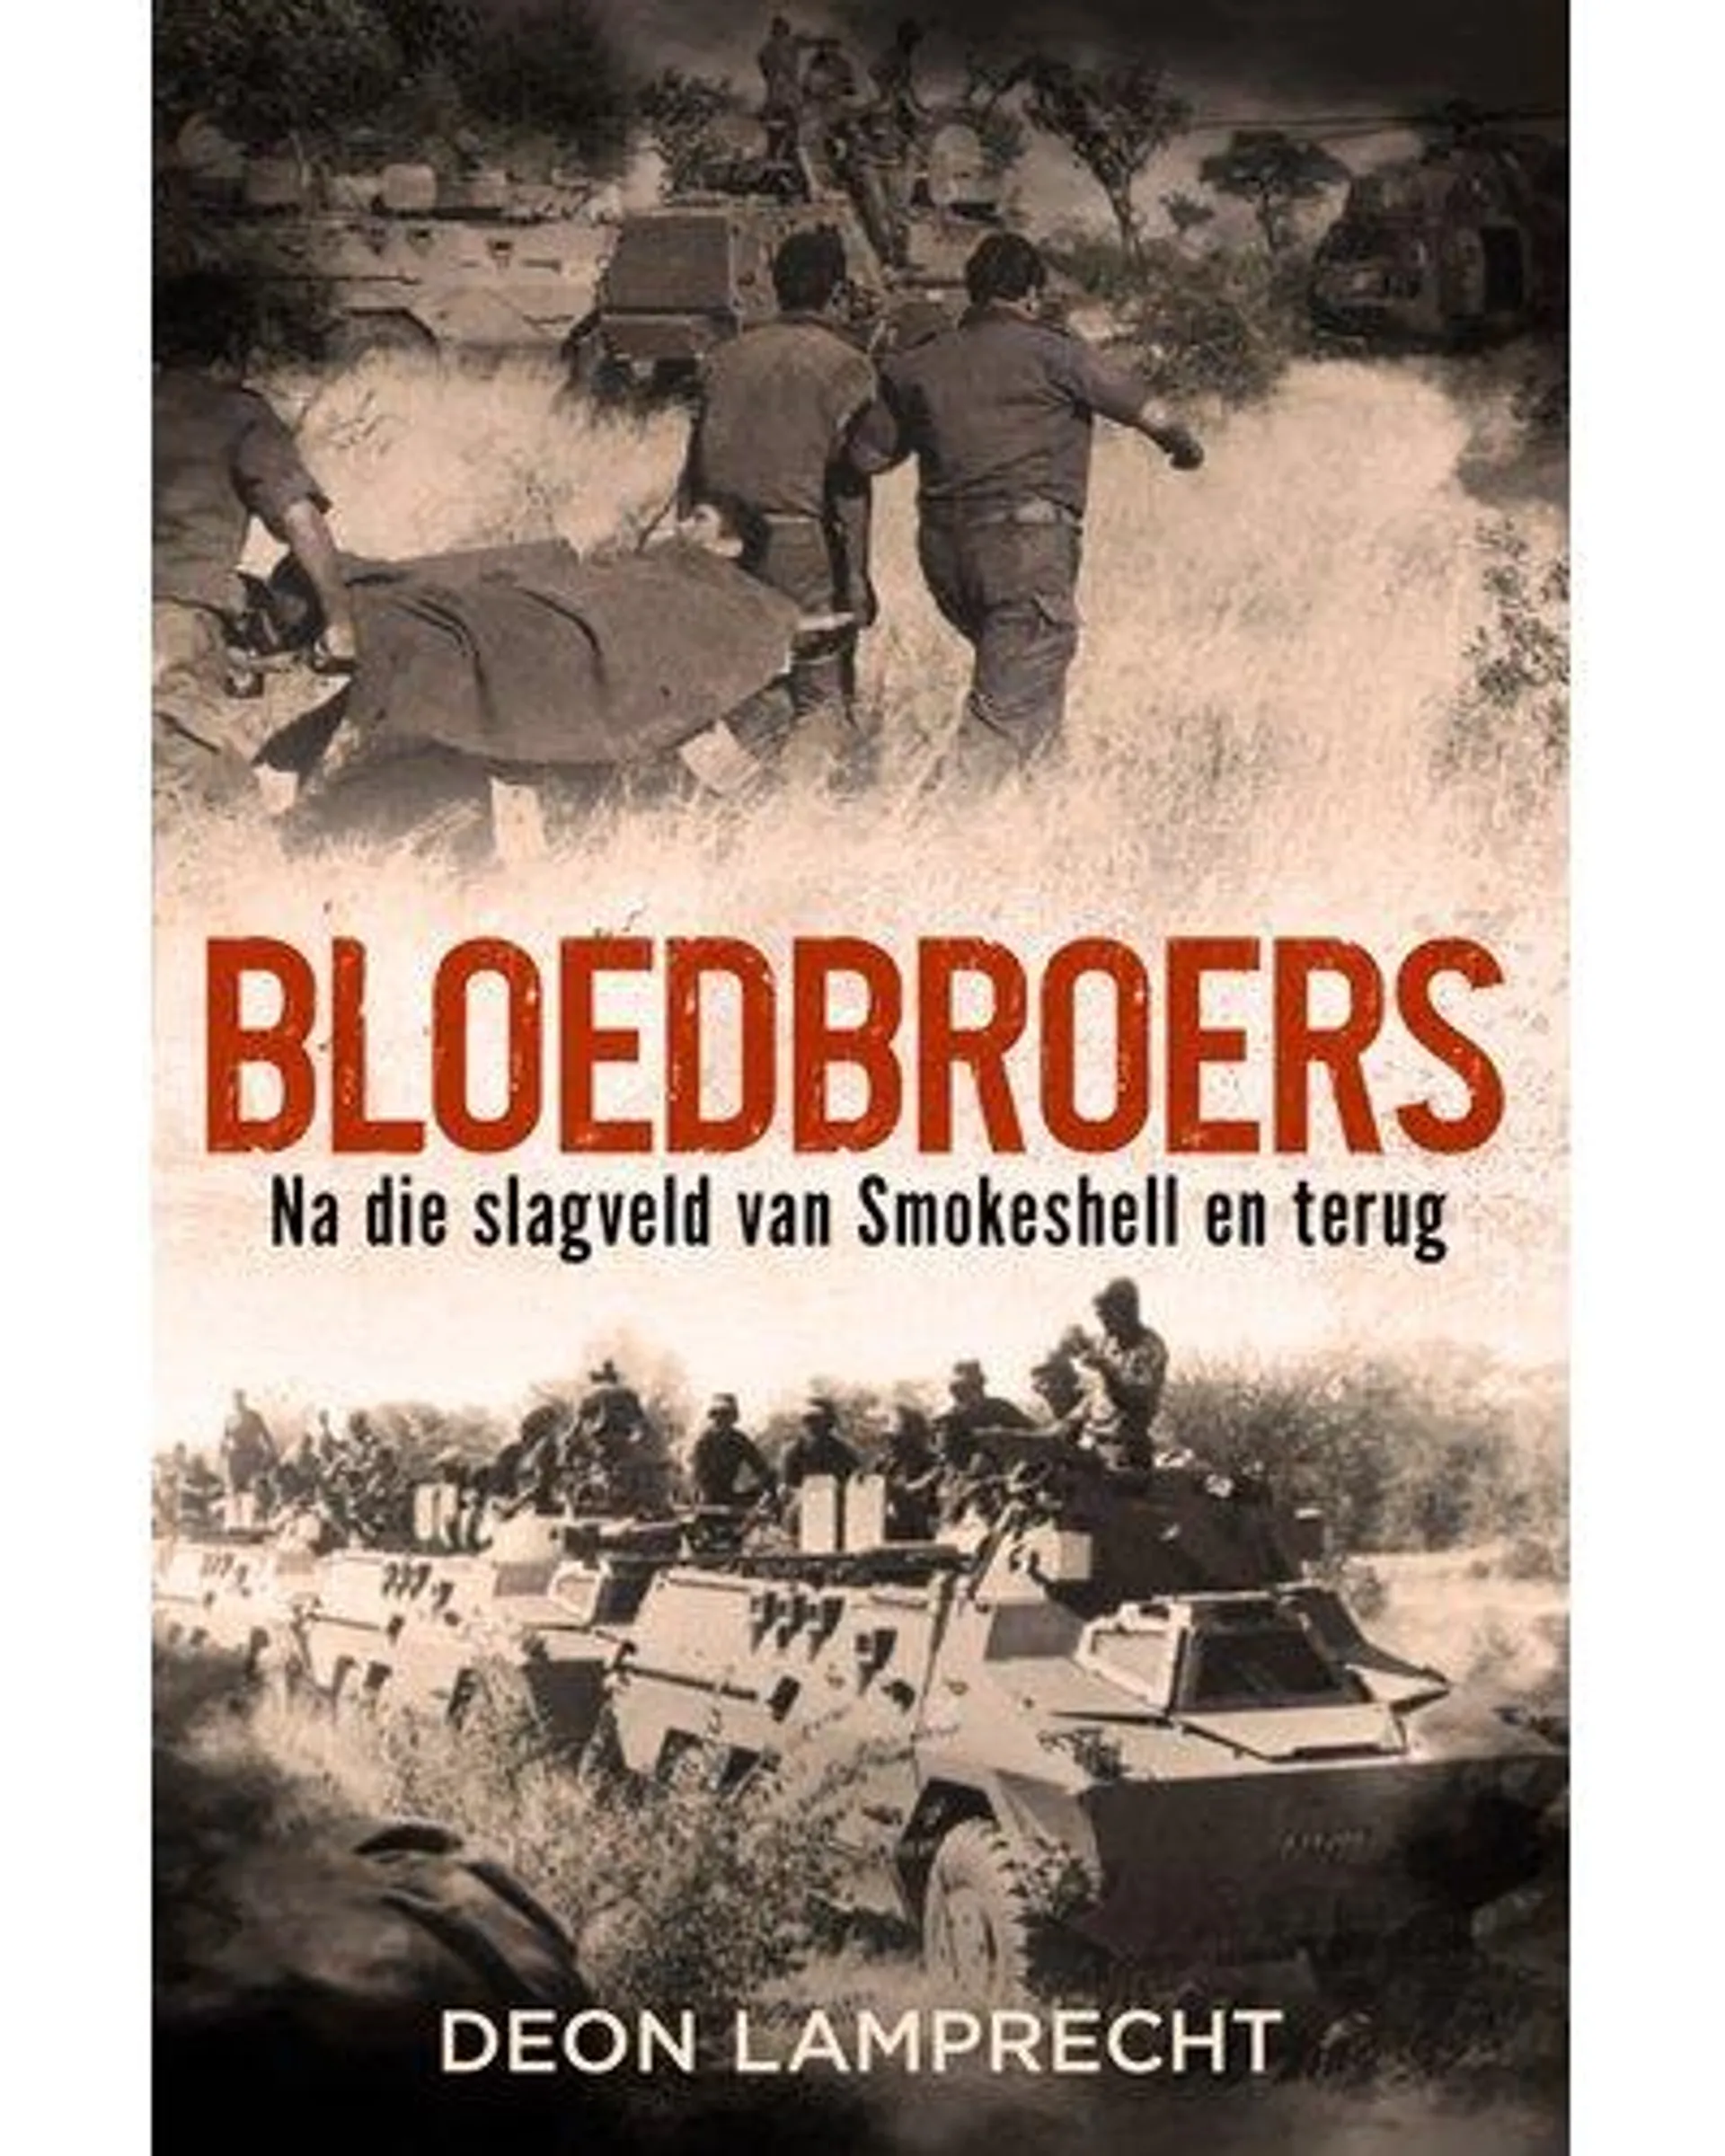 Bloedbroers - Na die slagveld van Smokeshell en terug (Afrikaans, Paperback)